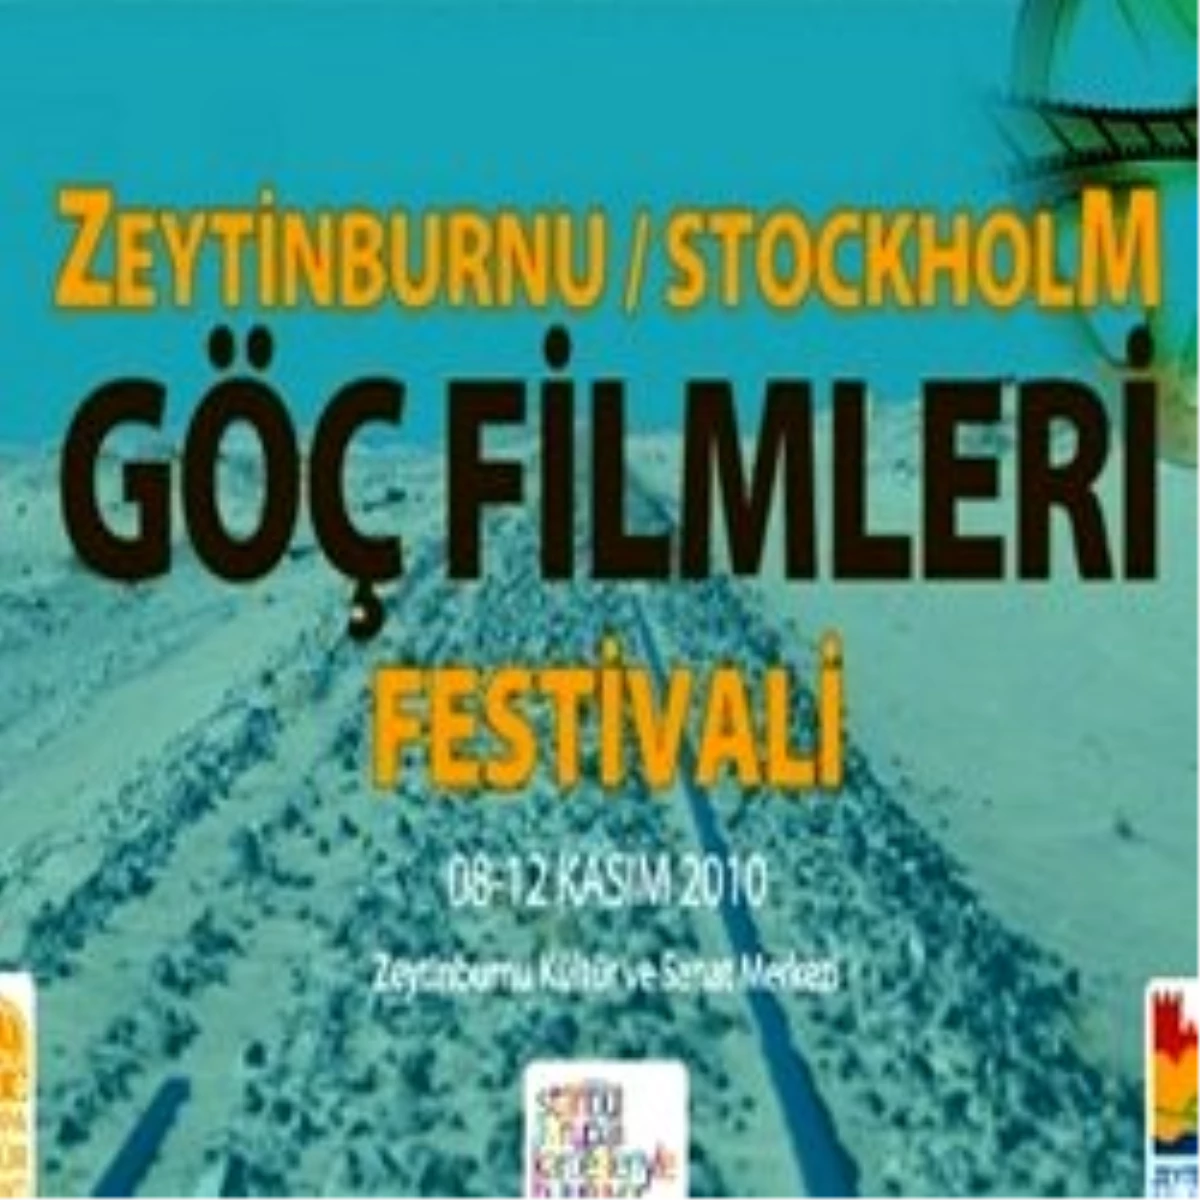 Göç Sorunu Zeytinburnu&Stockholm Göç Filmleri Festivali\'nde